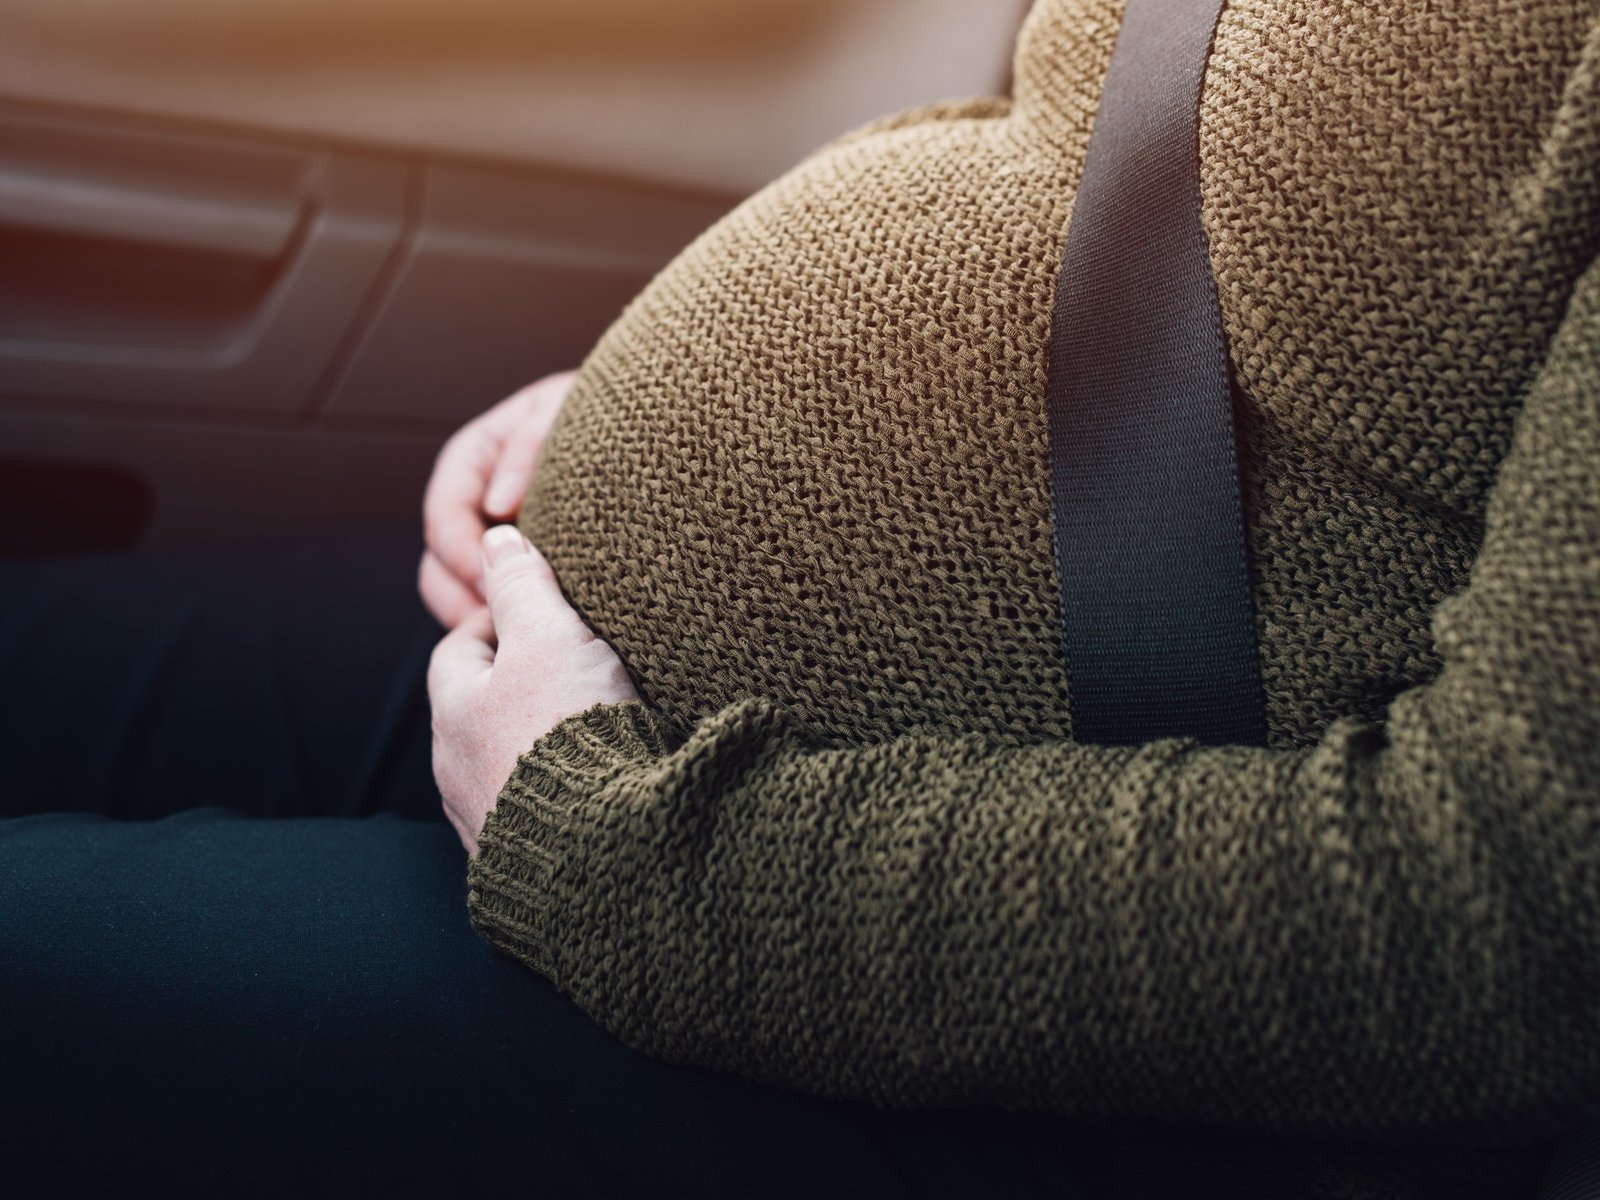 Schwangeren-Gurt fürs Auto: ADAC rät davon ab